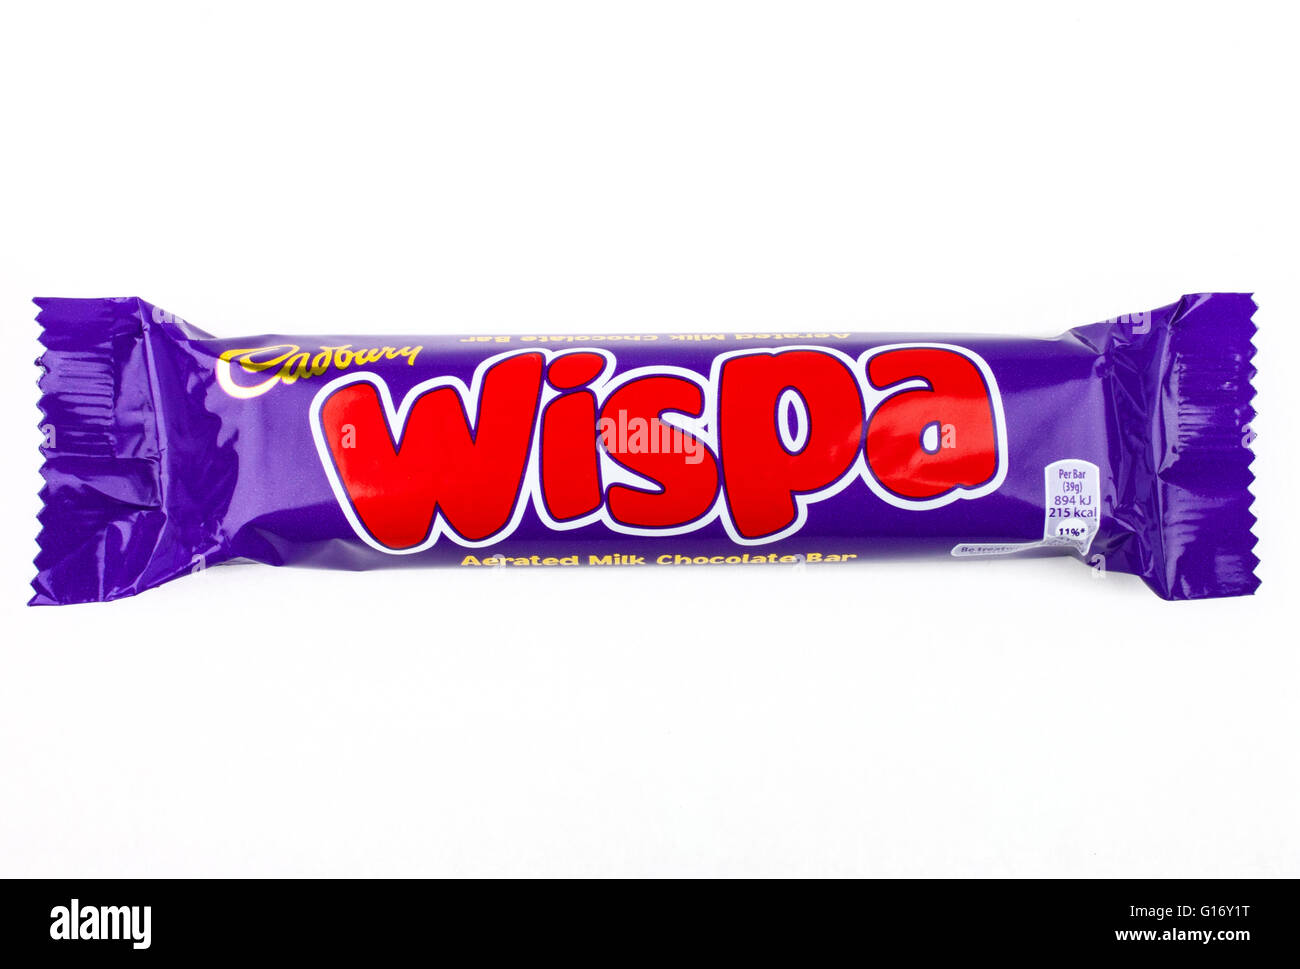 Londres, UK - 6 mai 2016 : une emprise Wispa barre de chocolat fabriqués par Cadbury, photographié sur un arrière-plan uni, blanc. Banque D'Images